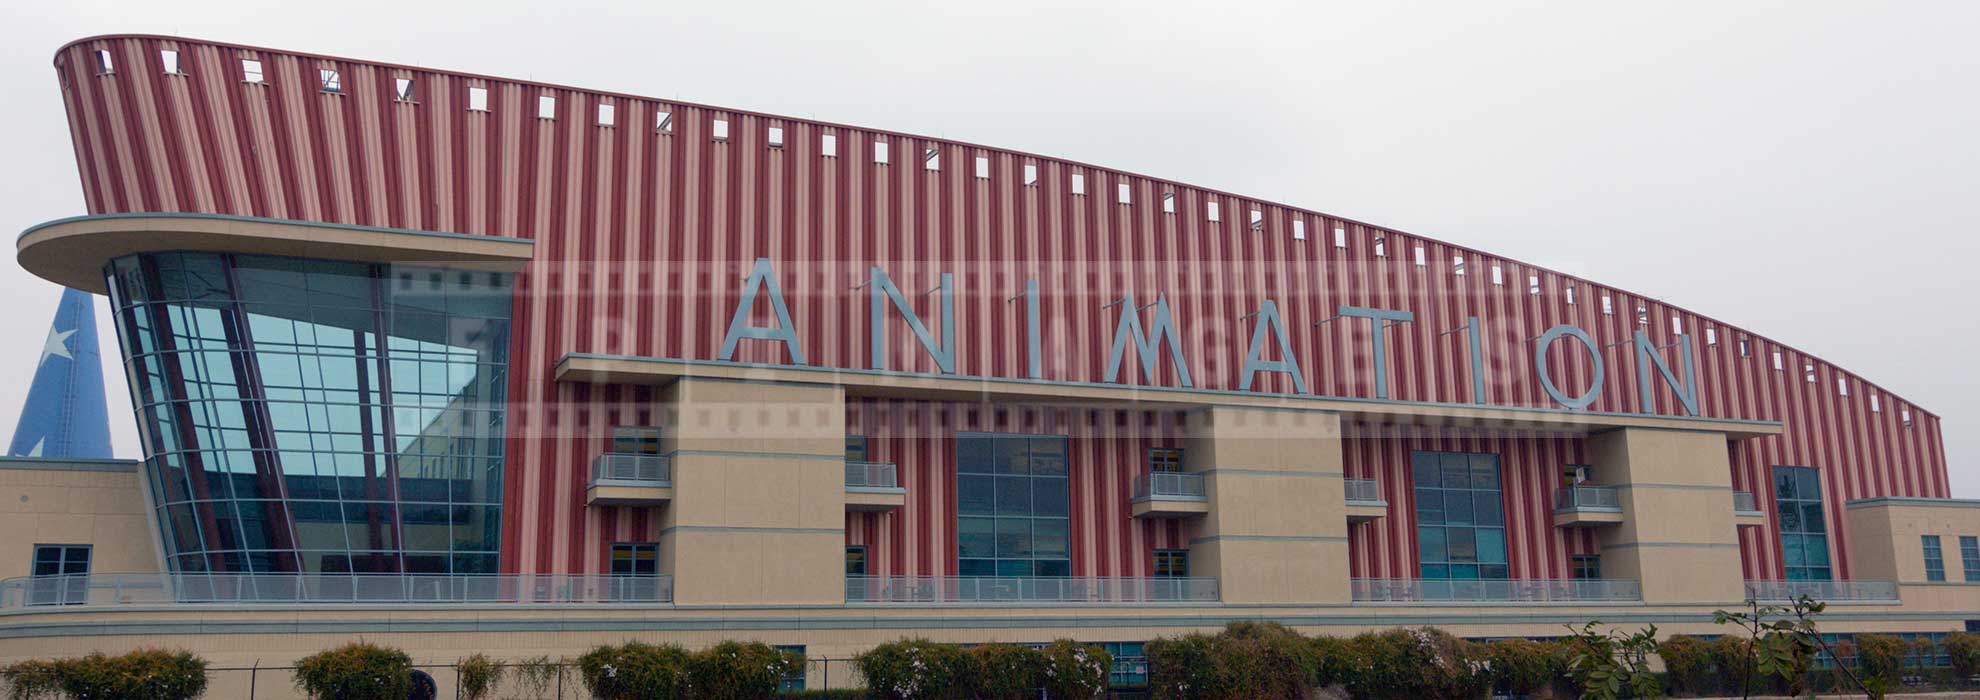 Disney Animation studios Unique building